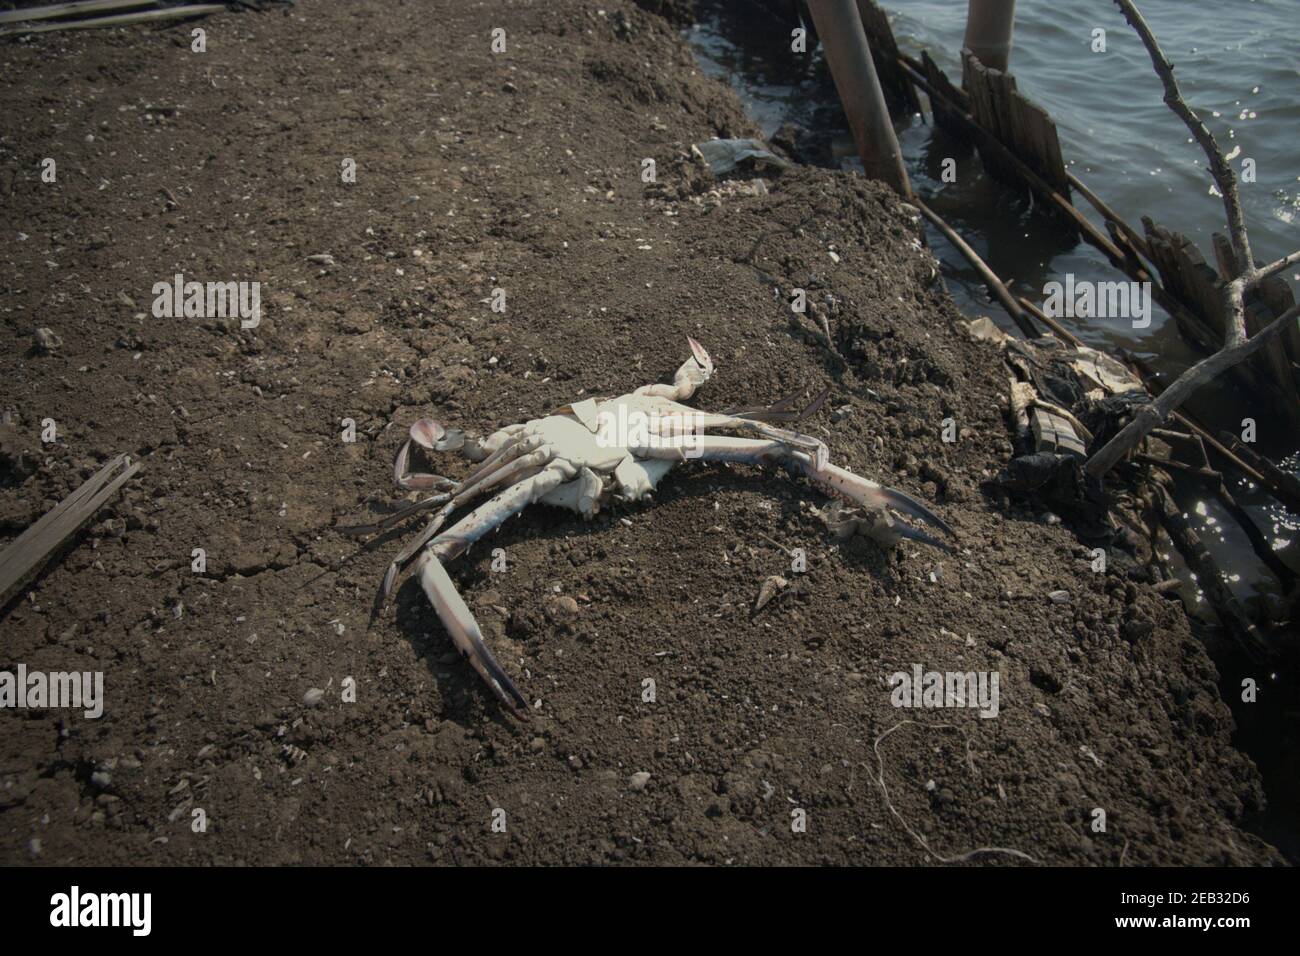 Un crabe mort sur le remblai de zones de pêche en eau saumâtre situé entre la forêt de mangrove de Kapuk Angke et le village de Kamal Muara dans la zone côtière de Jakarta, en Indonésie. Banque D'Images